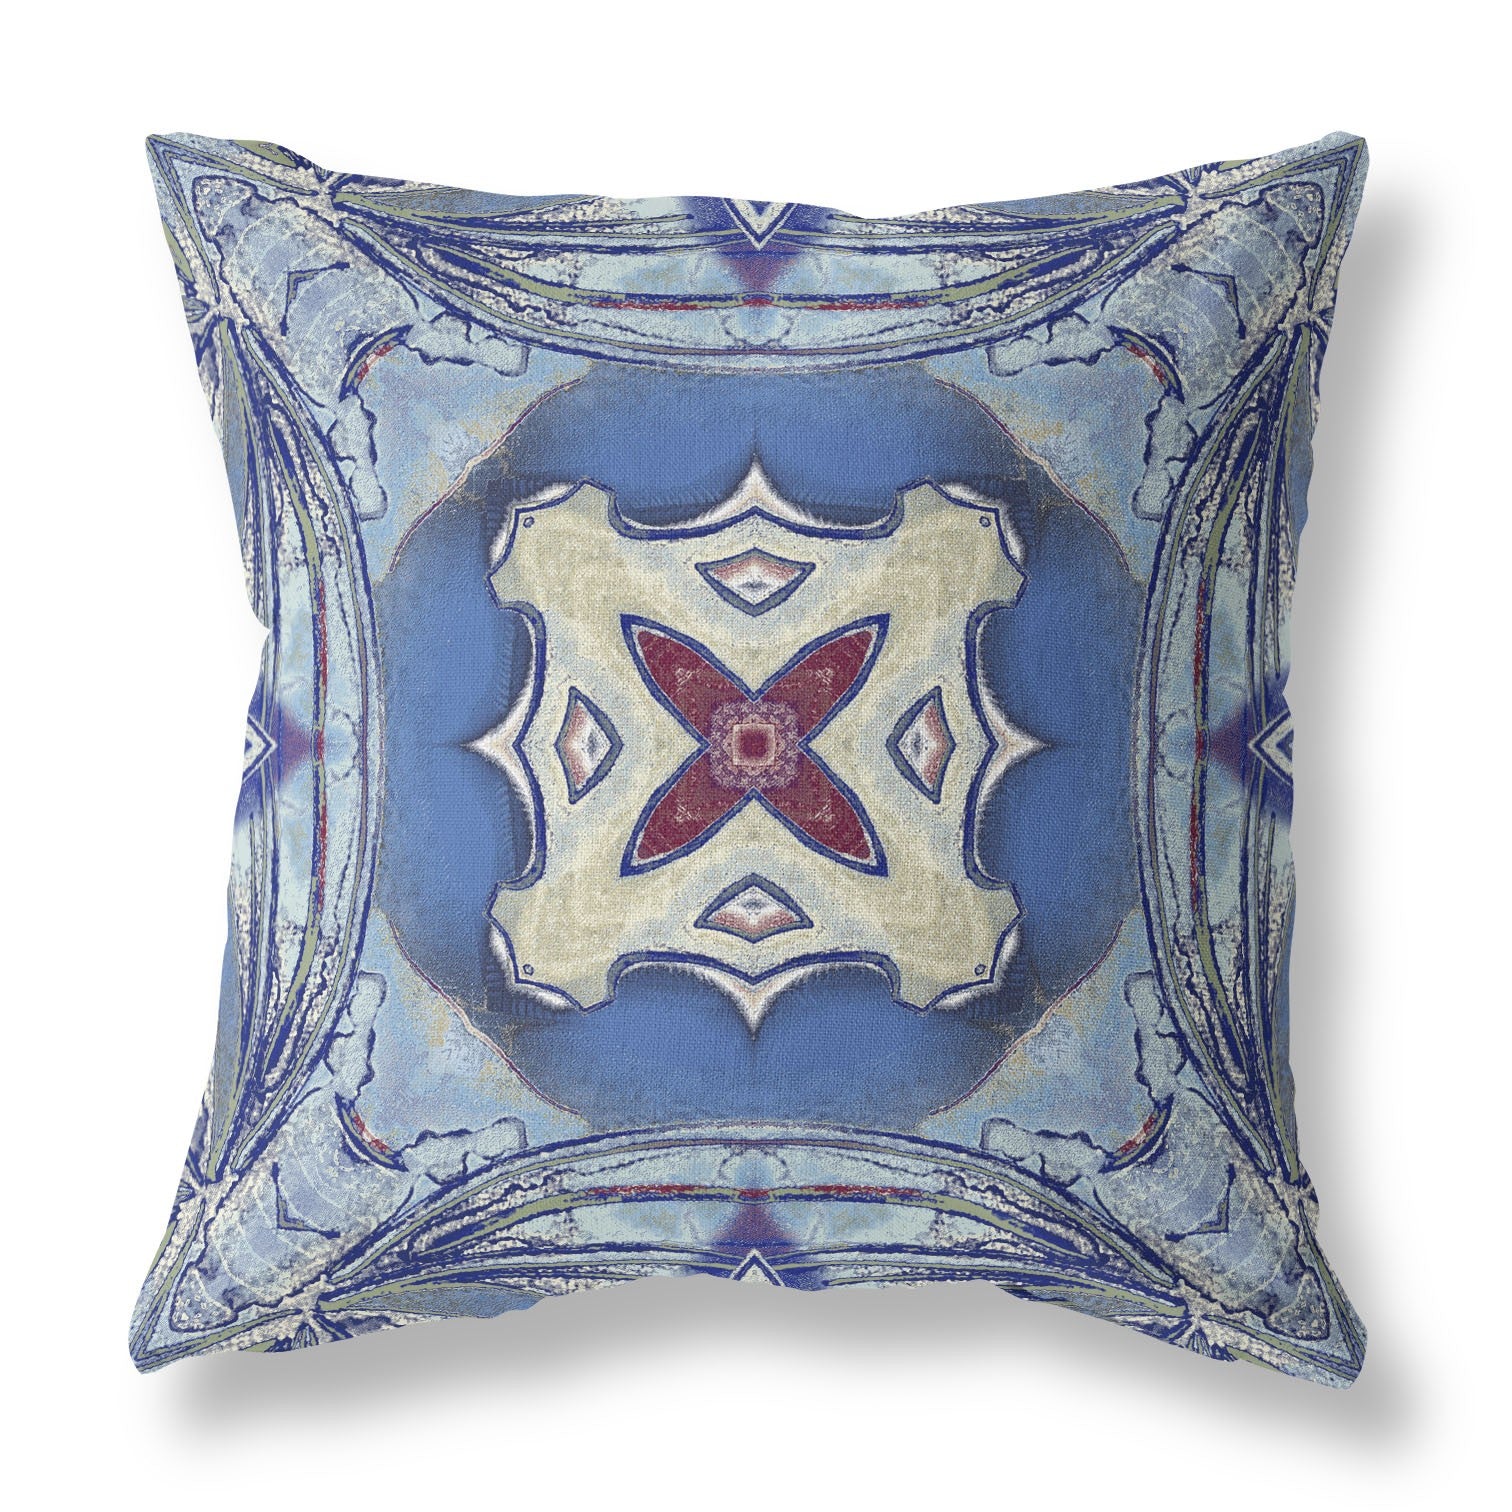 18” Blue Cream Geo Tribal Indoor Outdoor Throw Pillow